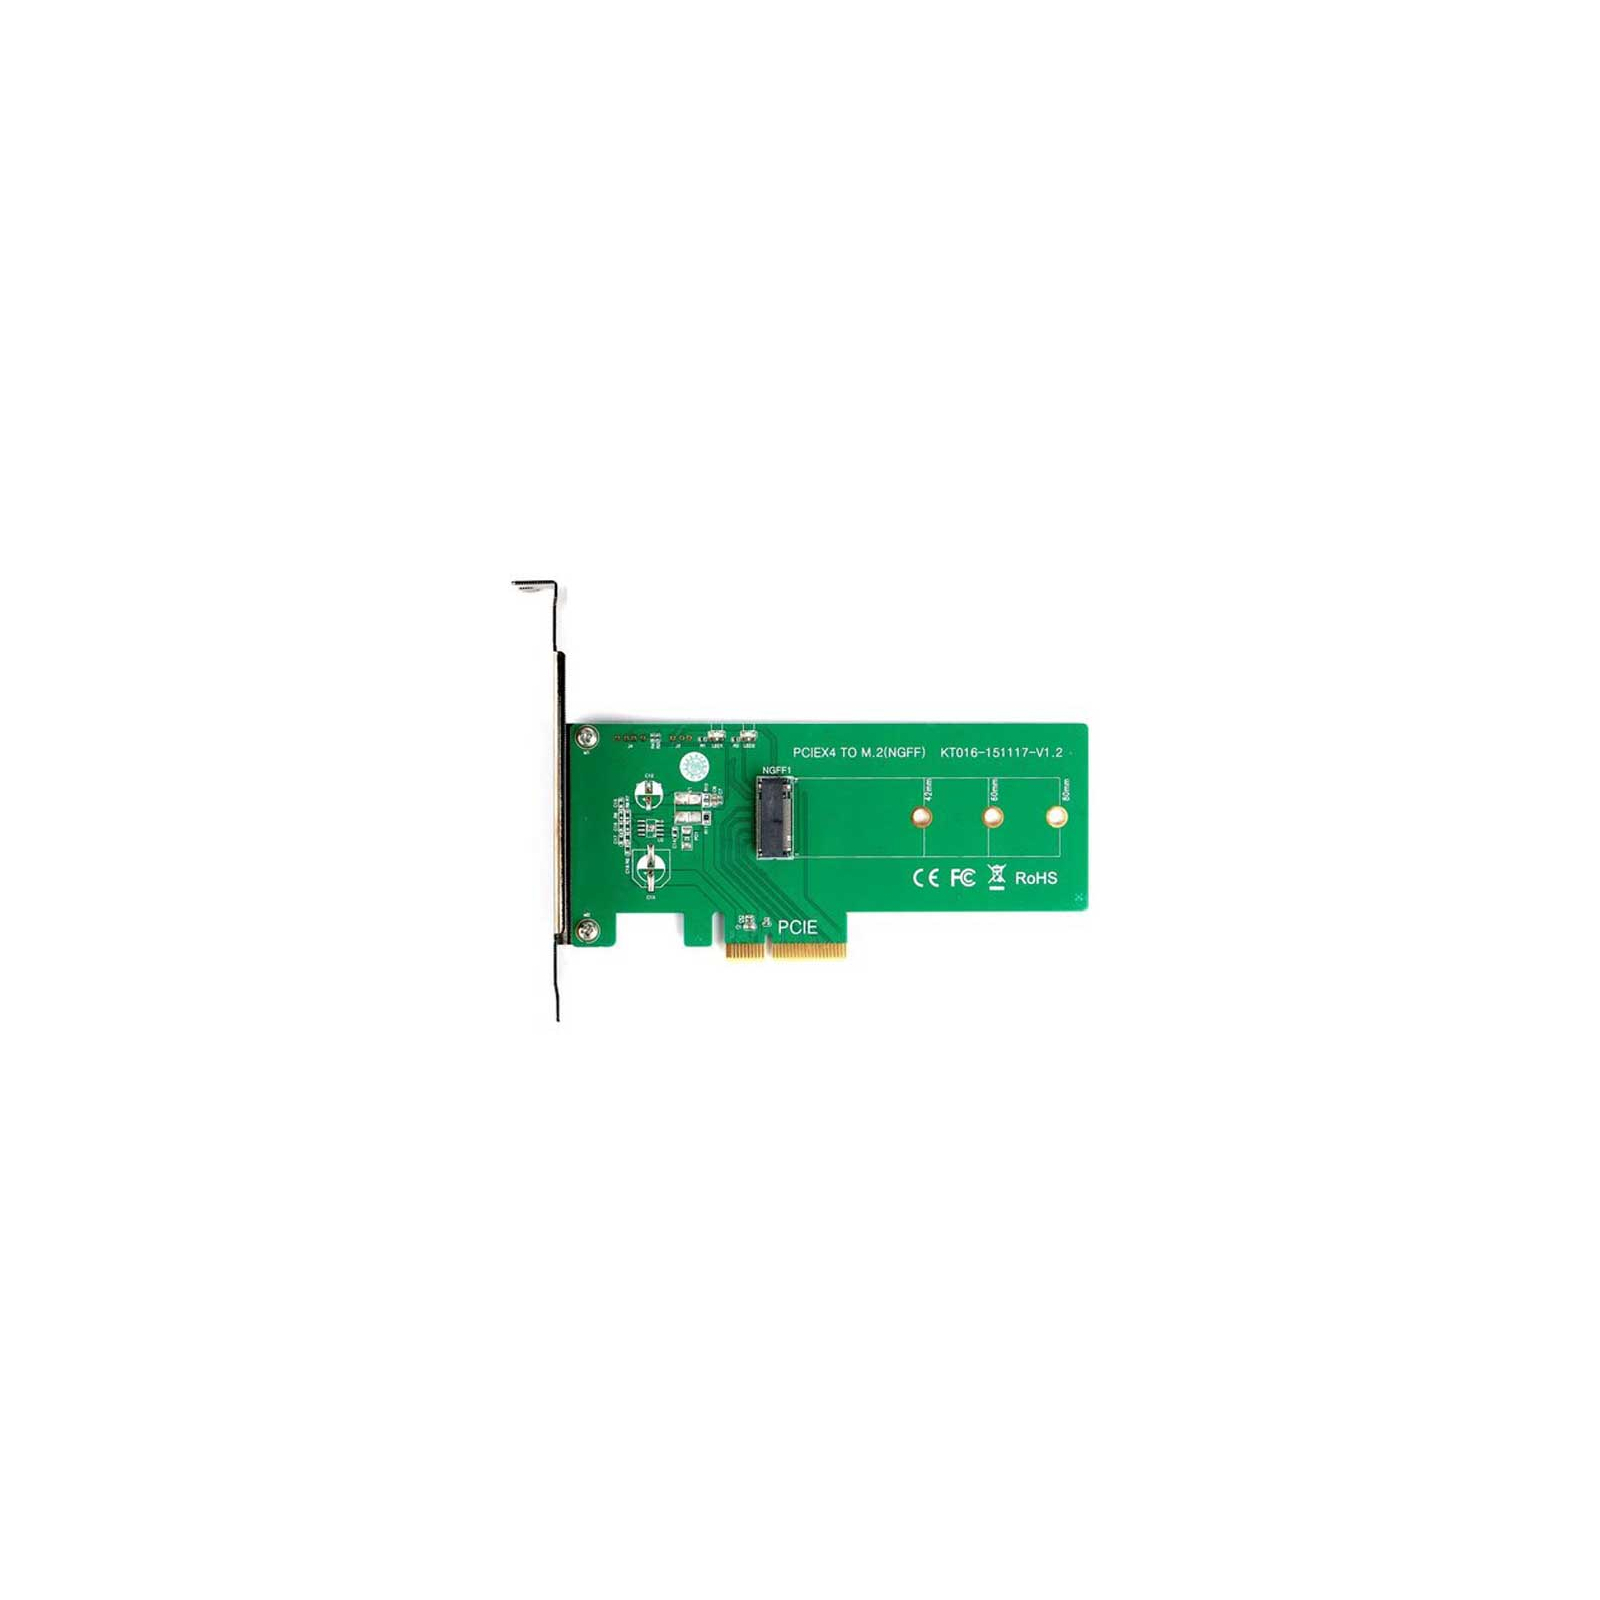 Контроллер M.2 PCIe SSD to PCI-E Maiwo (KT016) изображение 2